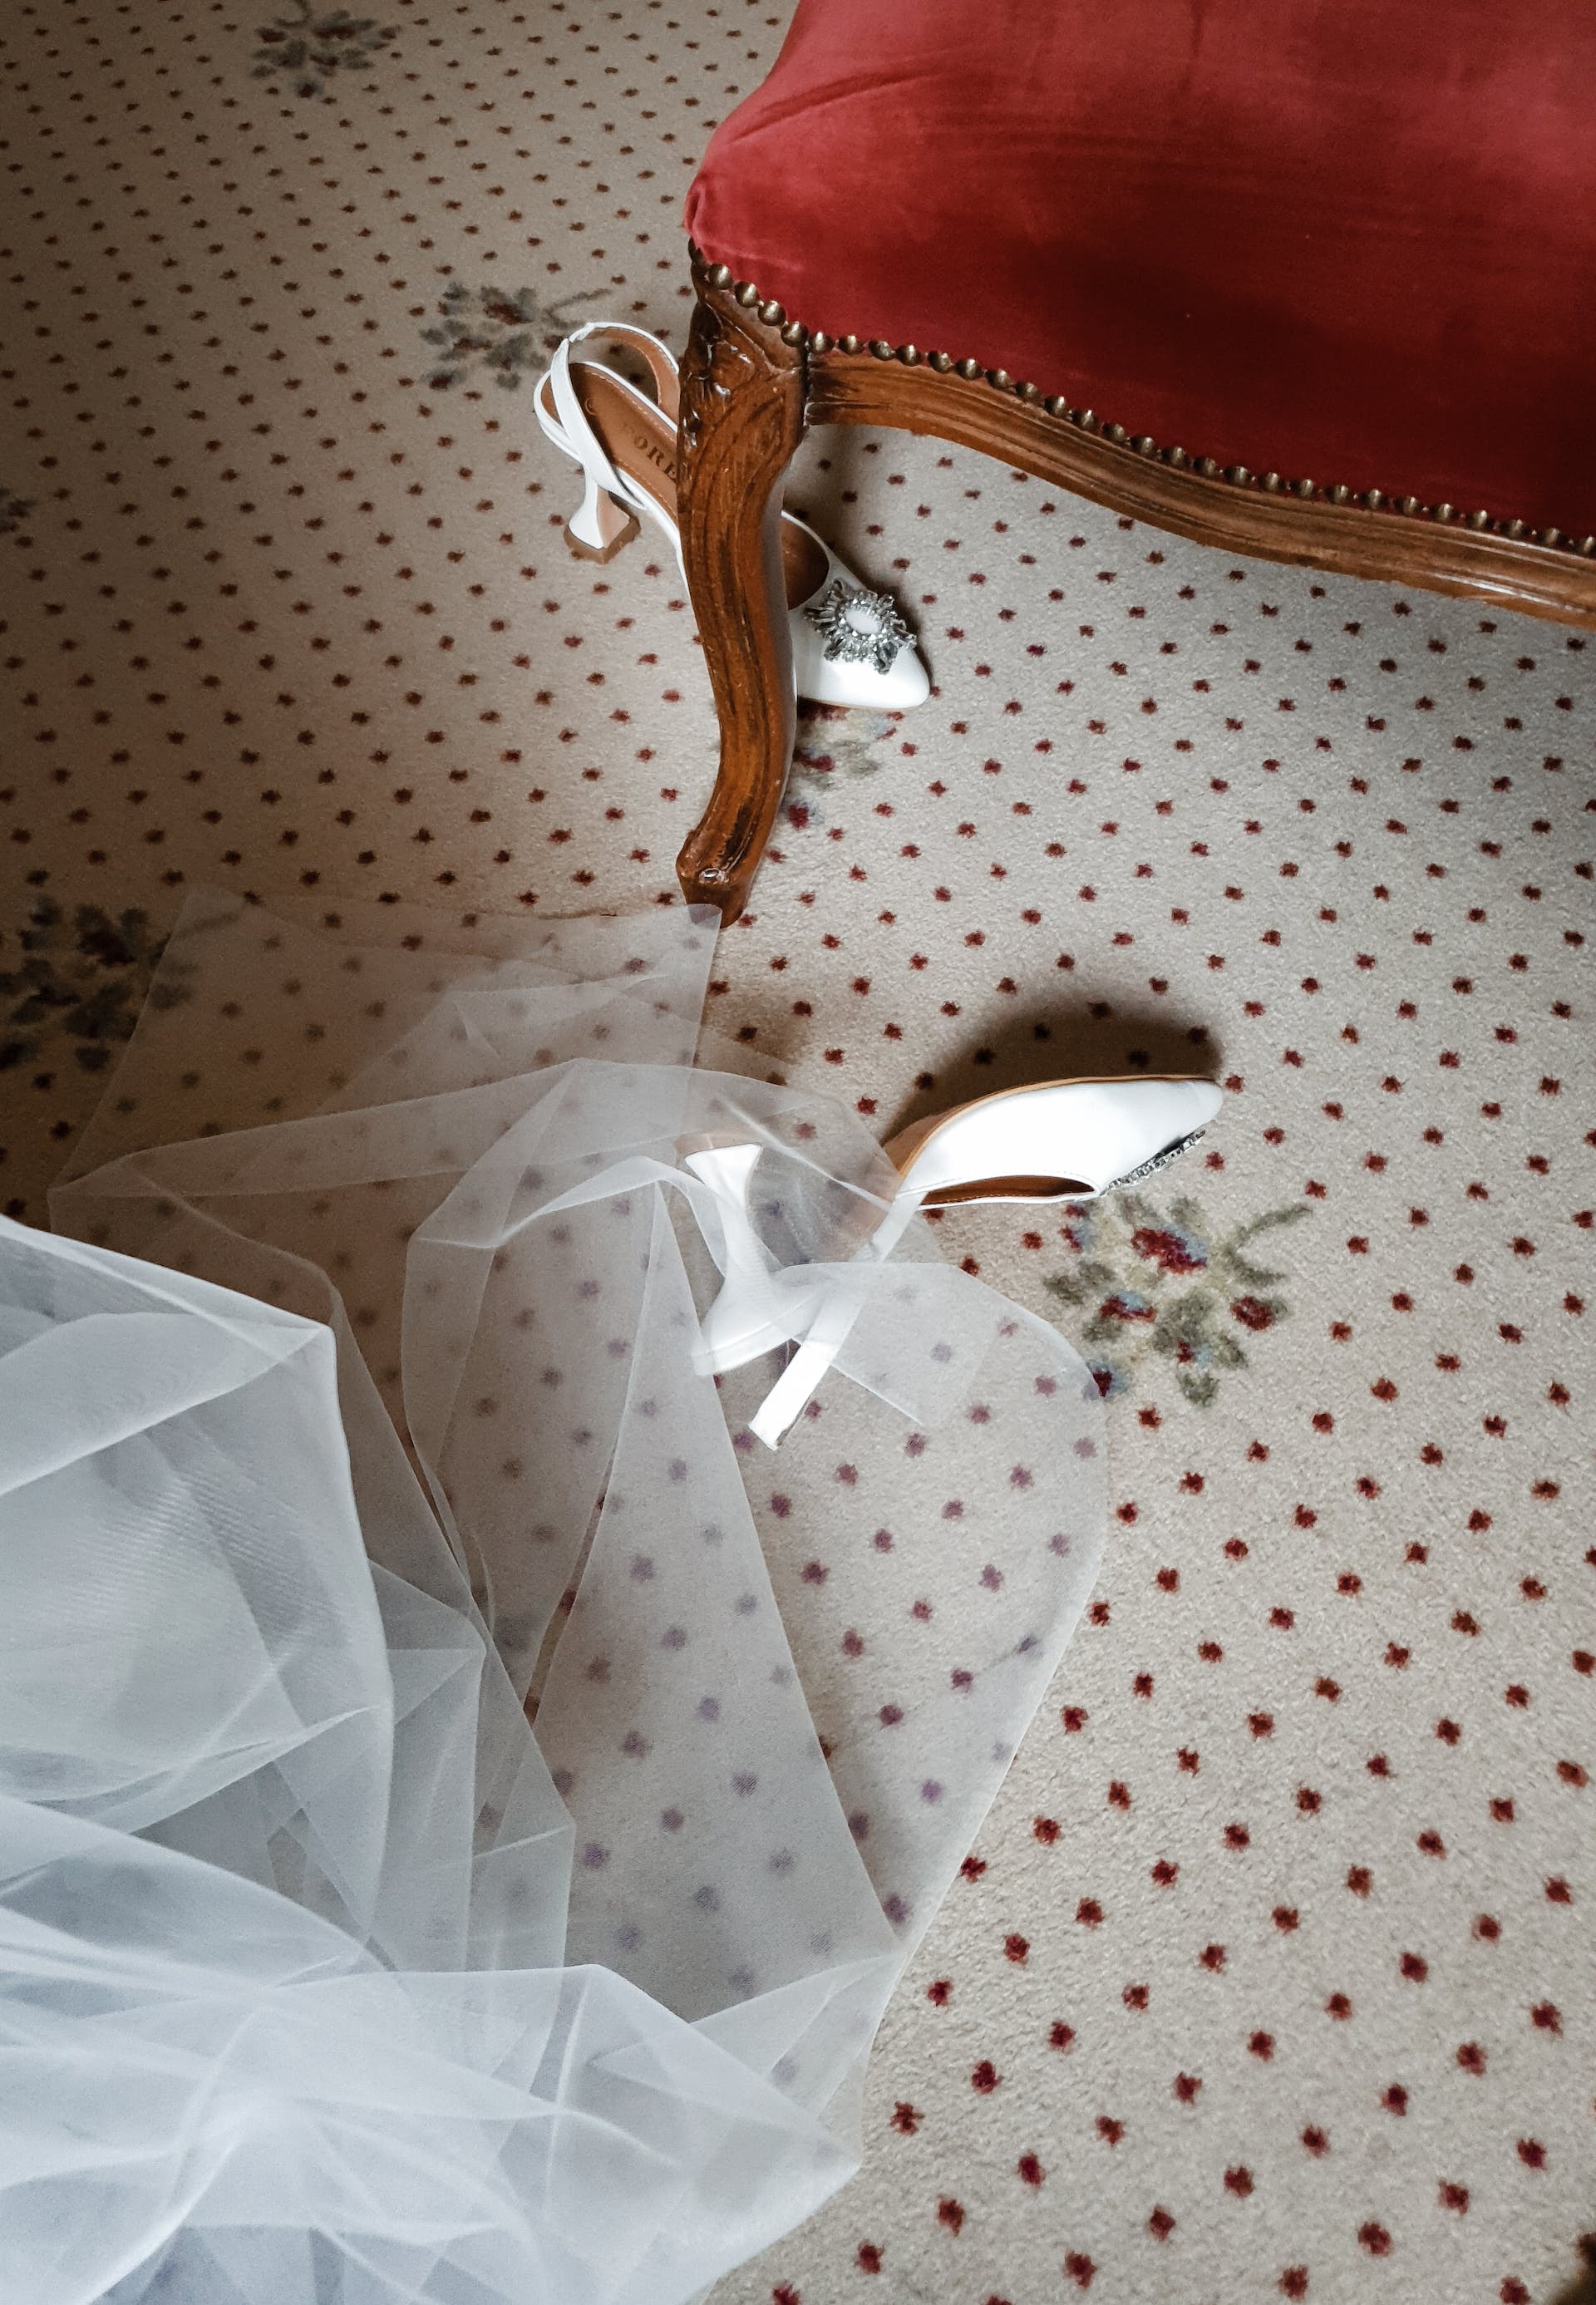 Robe de mariée et chaussures sur le sol | Source : Pexels